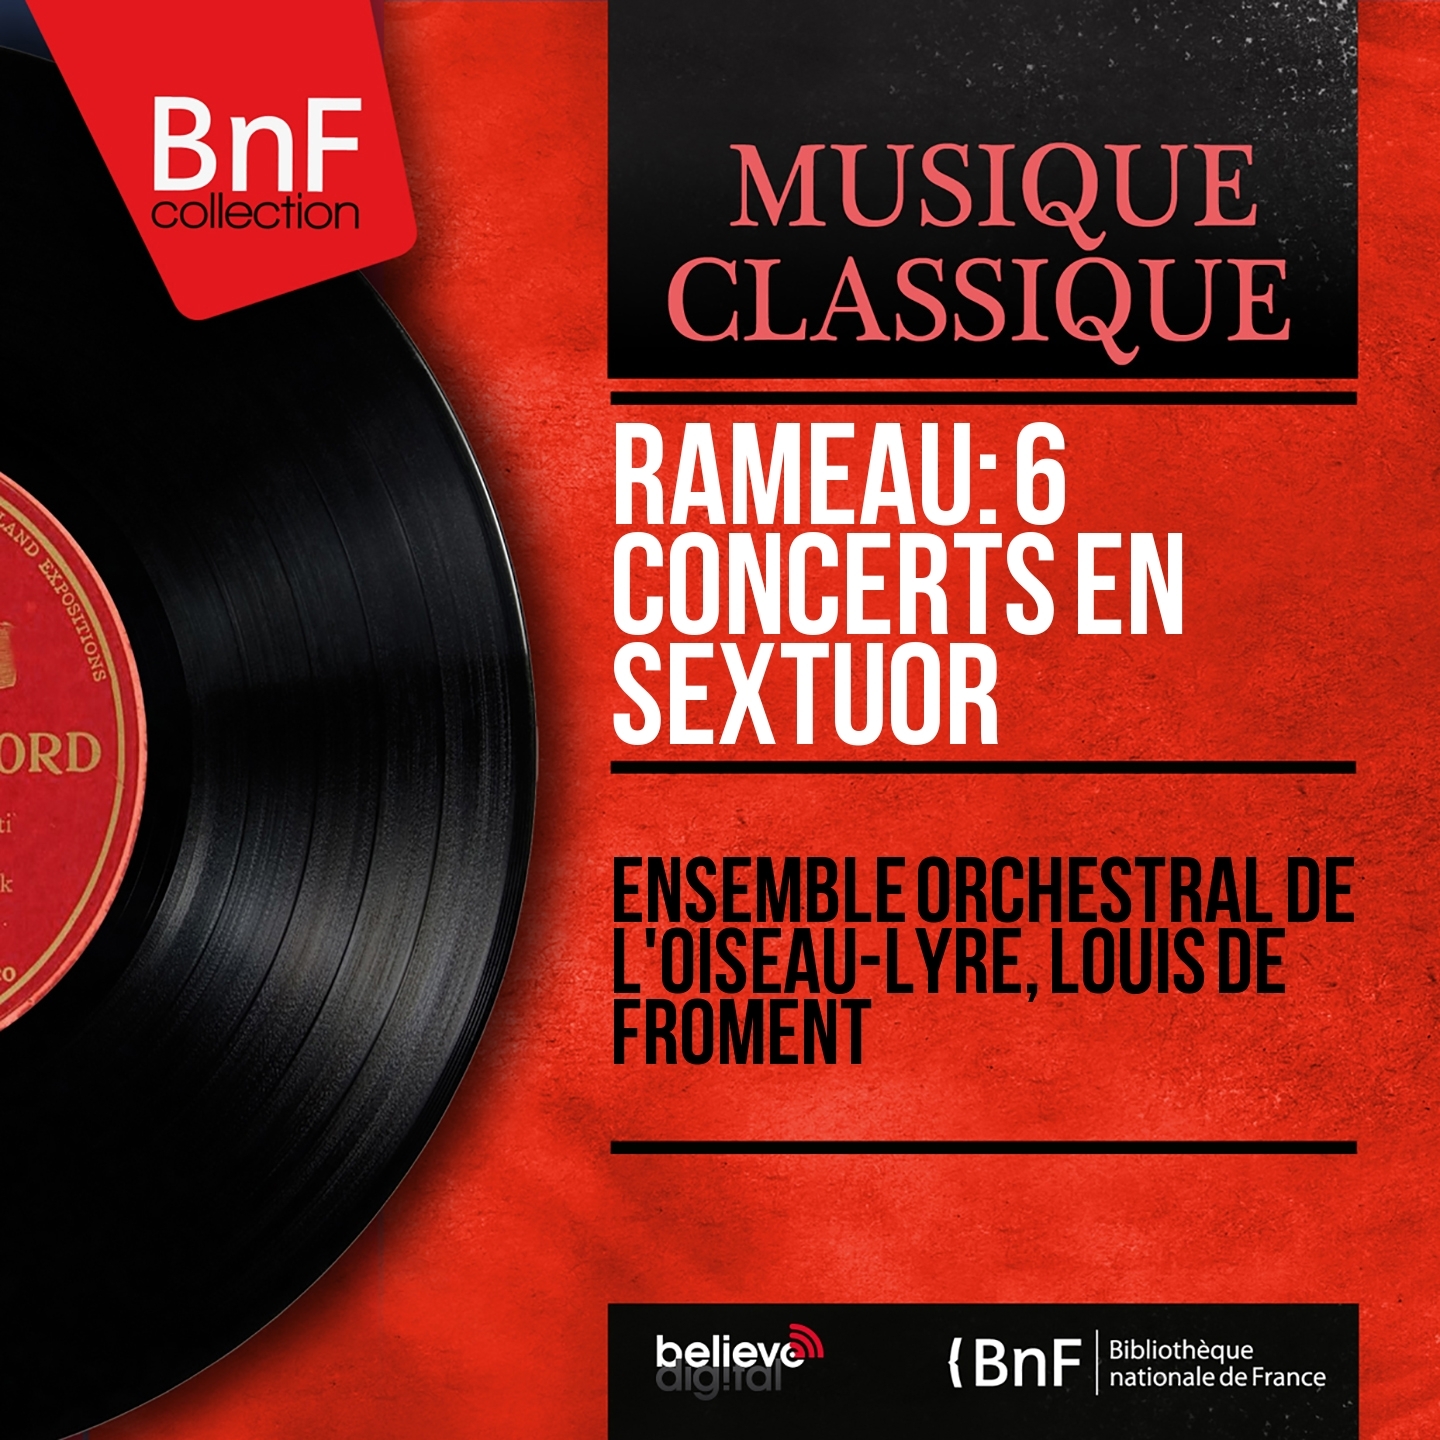 Rameau: 6 Concerts en sextuor (Mono Version)